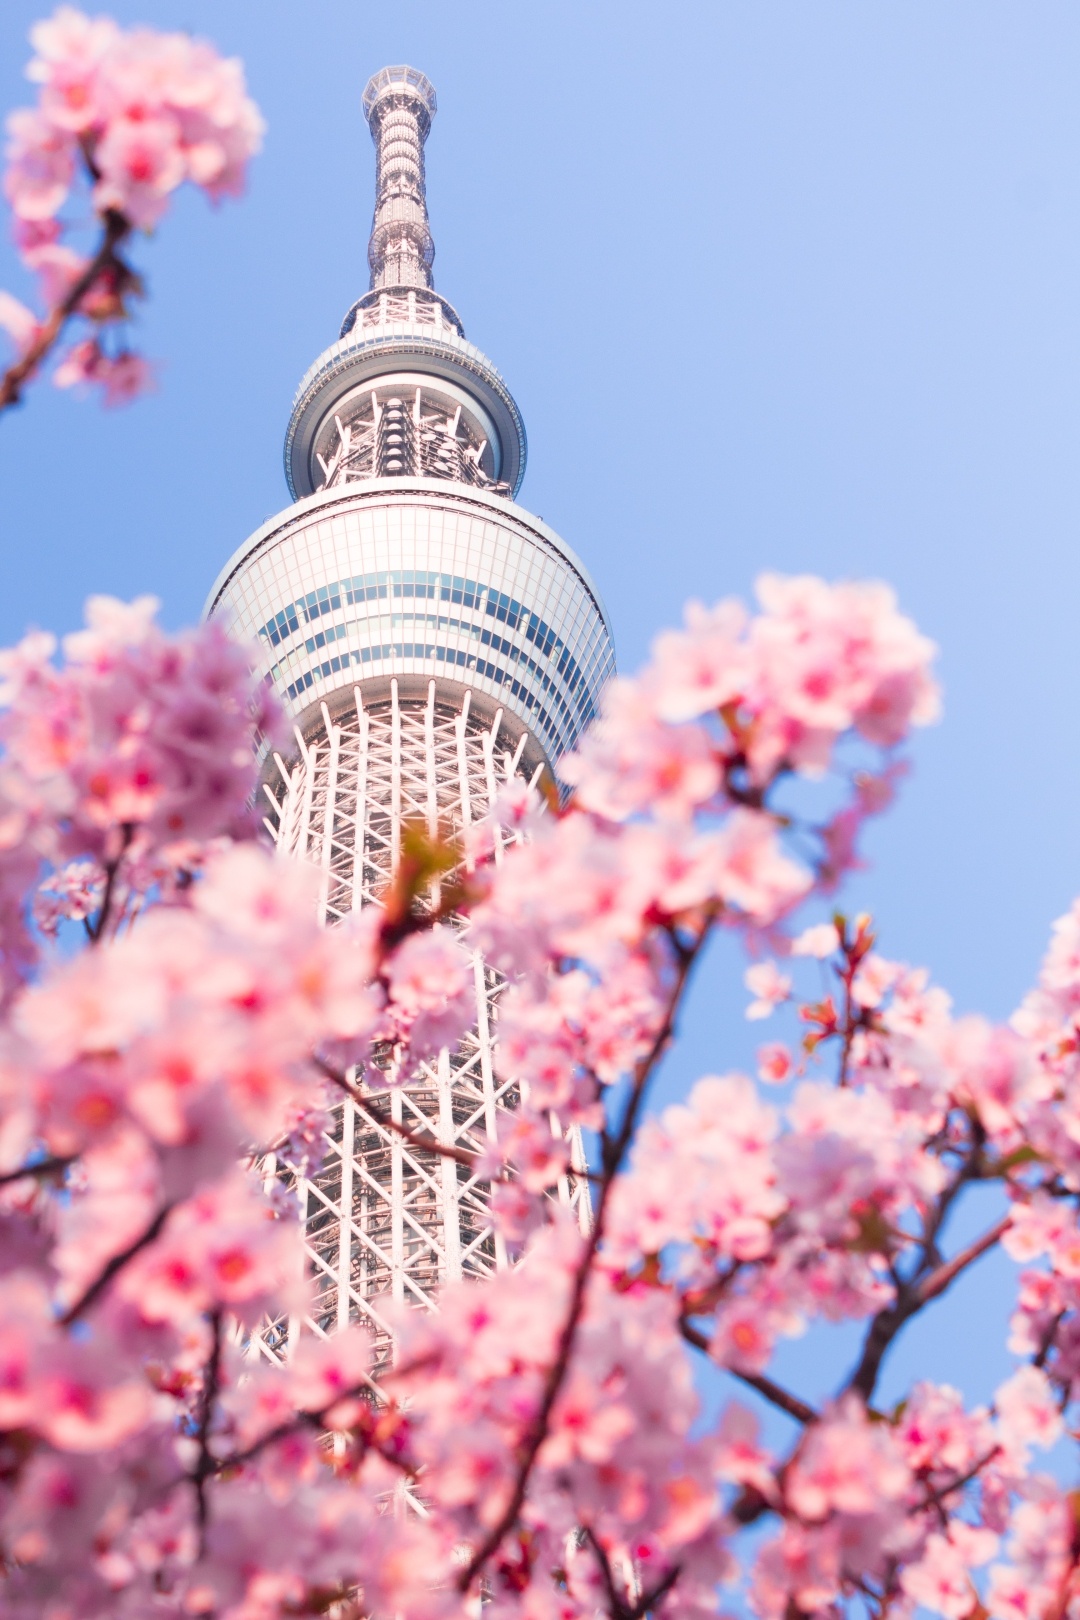 Ako planirate putovanje u Japan, neka to bude u proljeće – cvjetni prizori čine ga posebnim